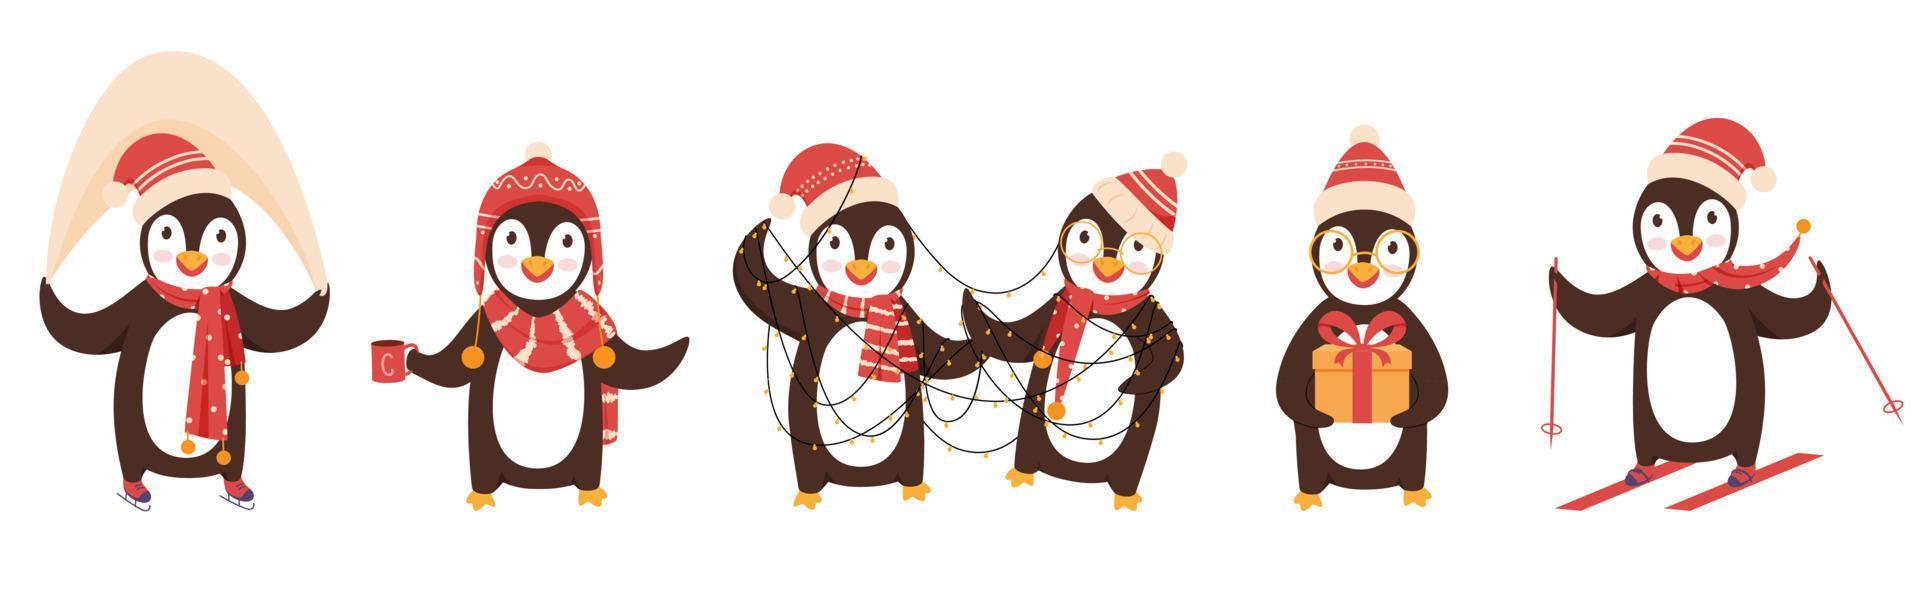 linda pingüino caracteres vistiendo de lana sombrero y bufanda en diferente posa vector